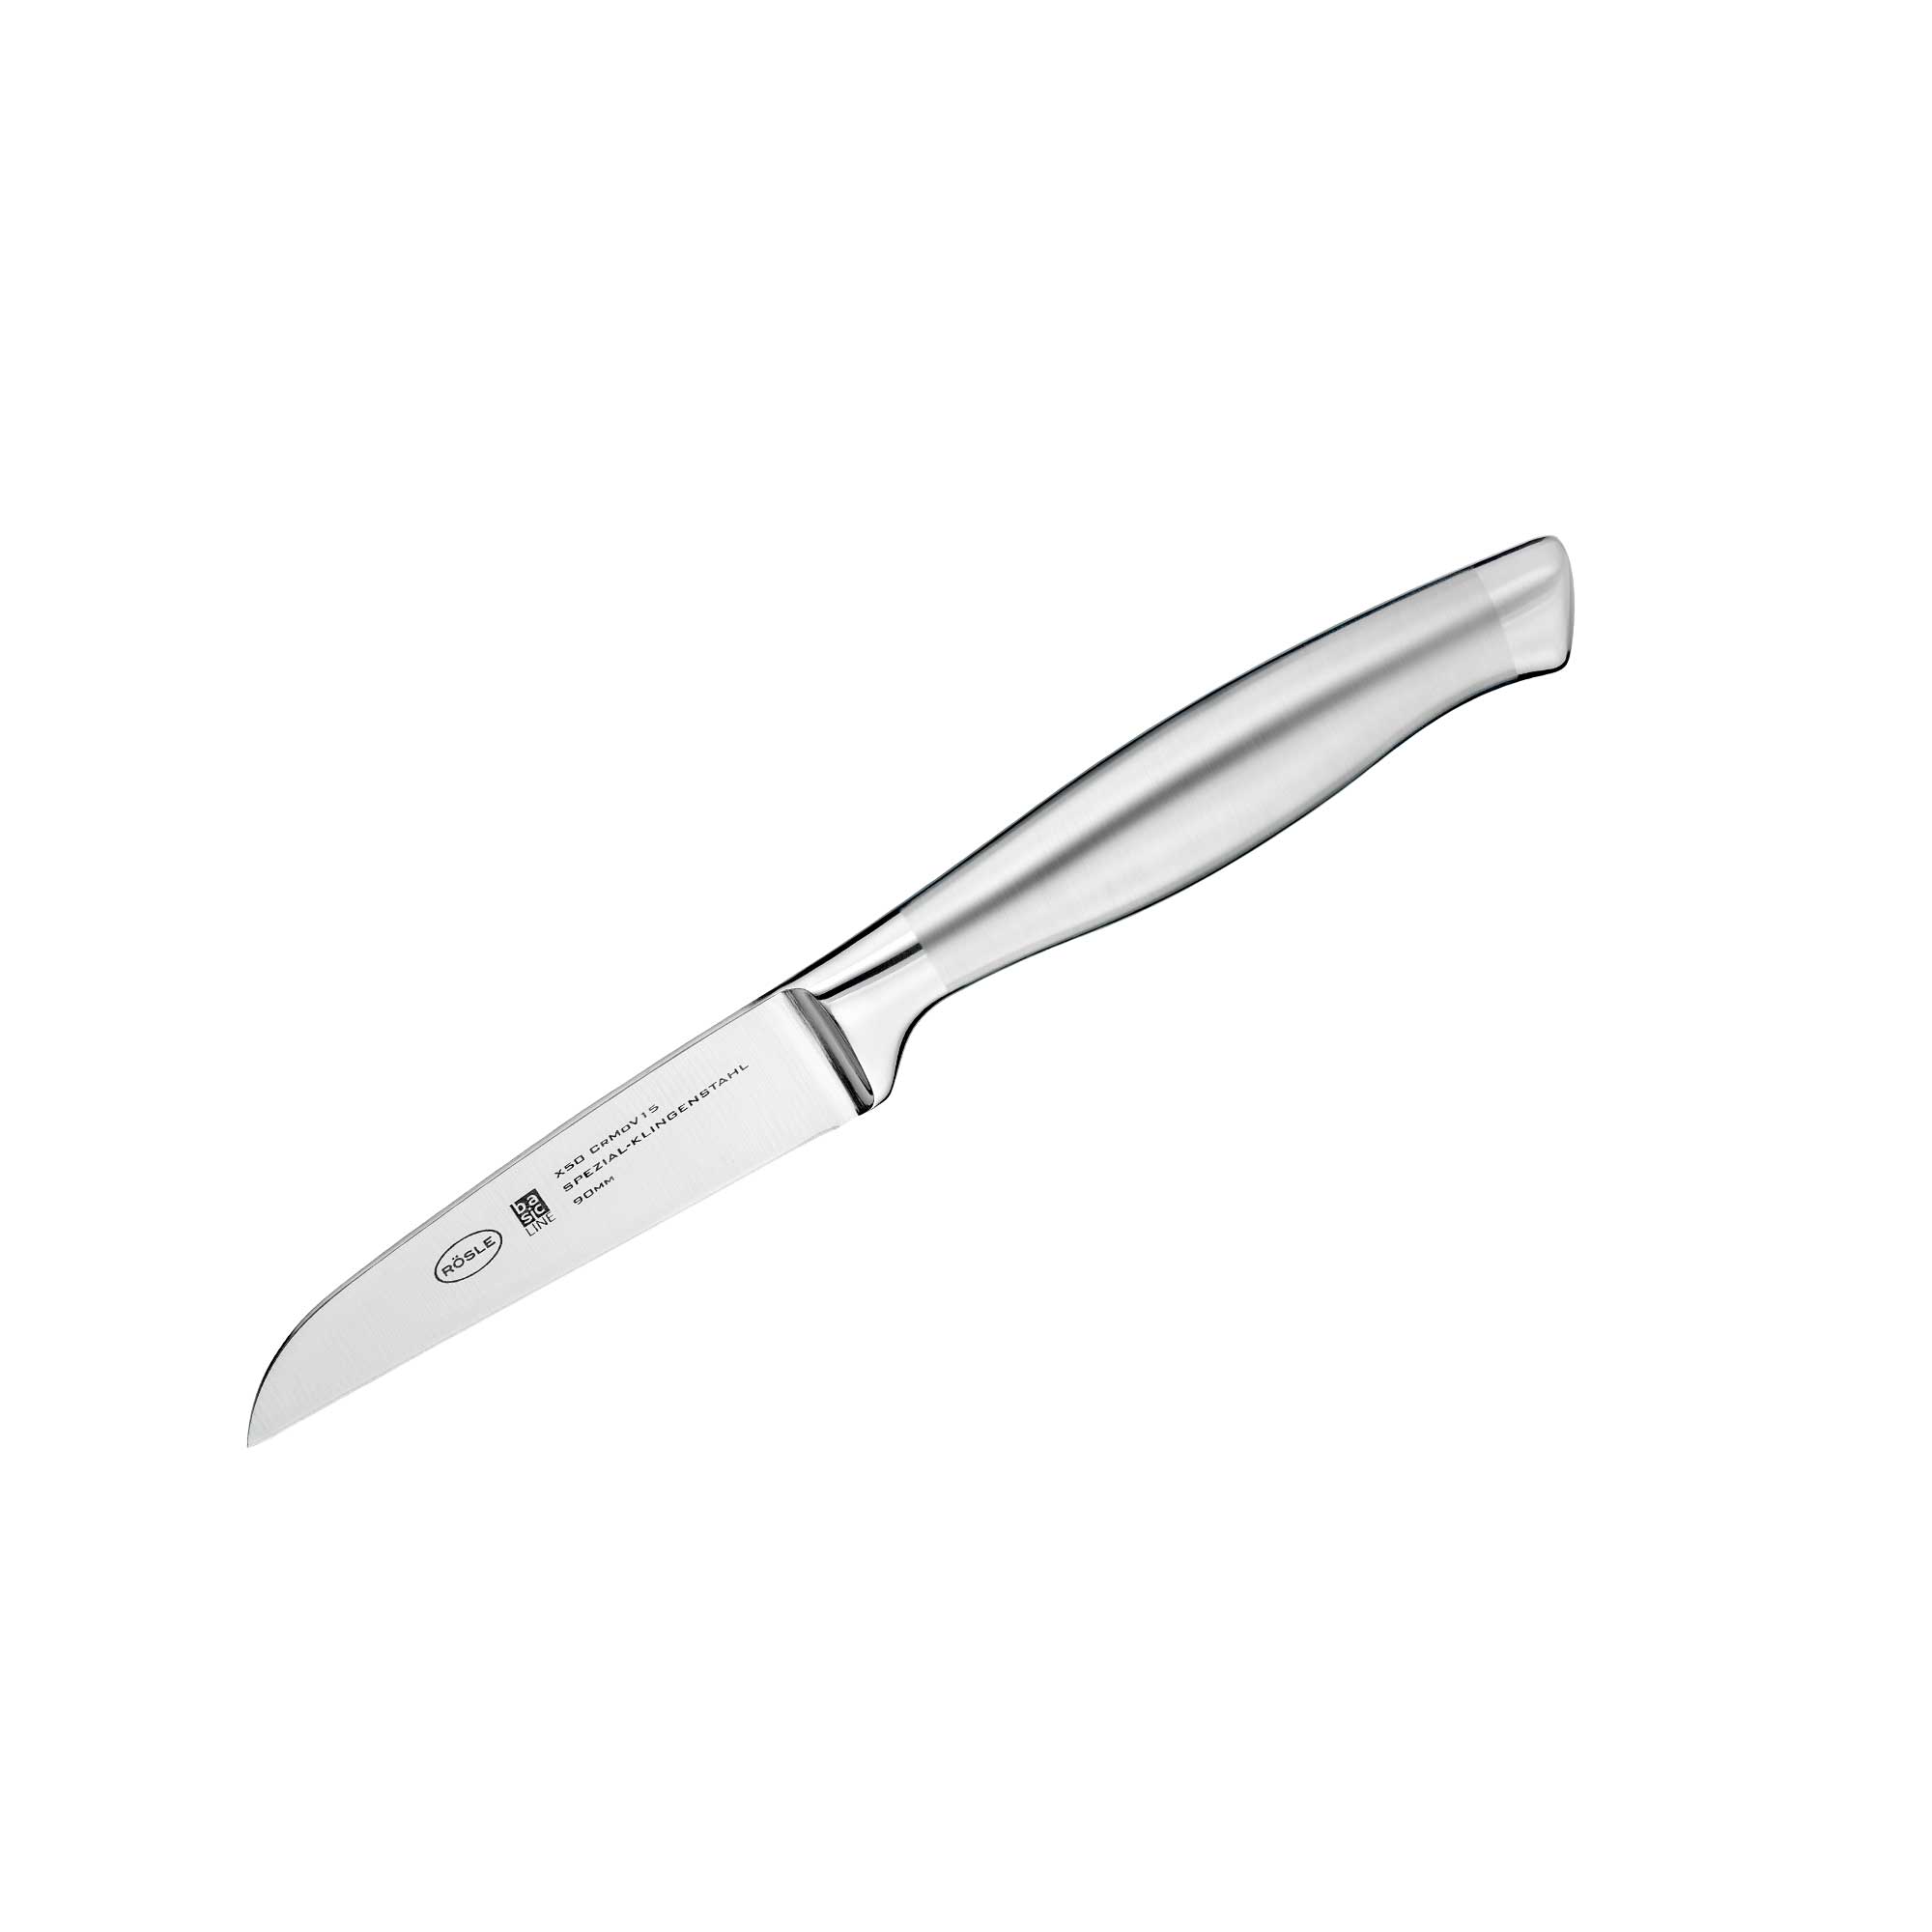 Vegetable Knife "Basic Line" 9 cm